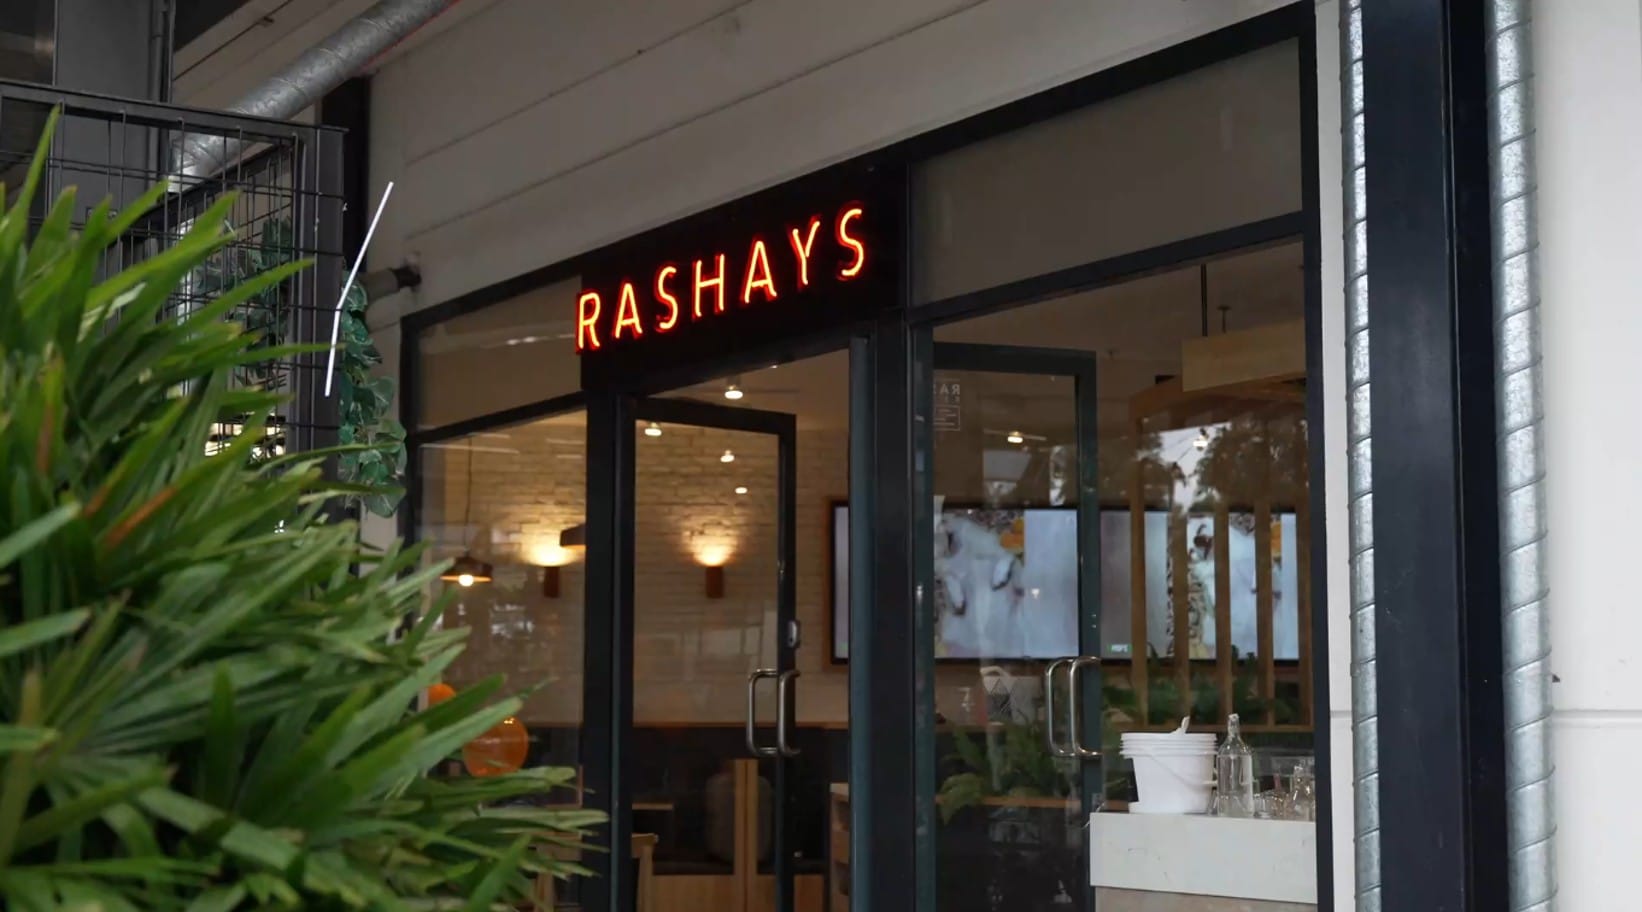 Rashays Casual Dining